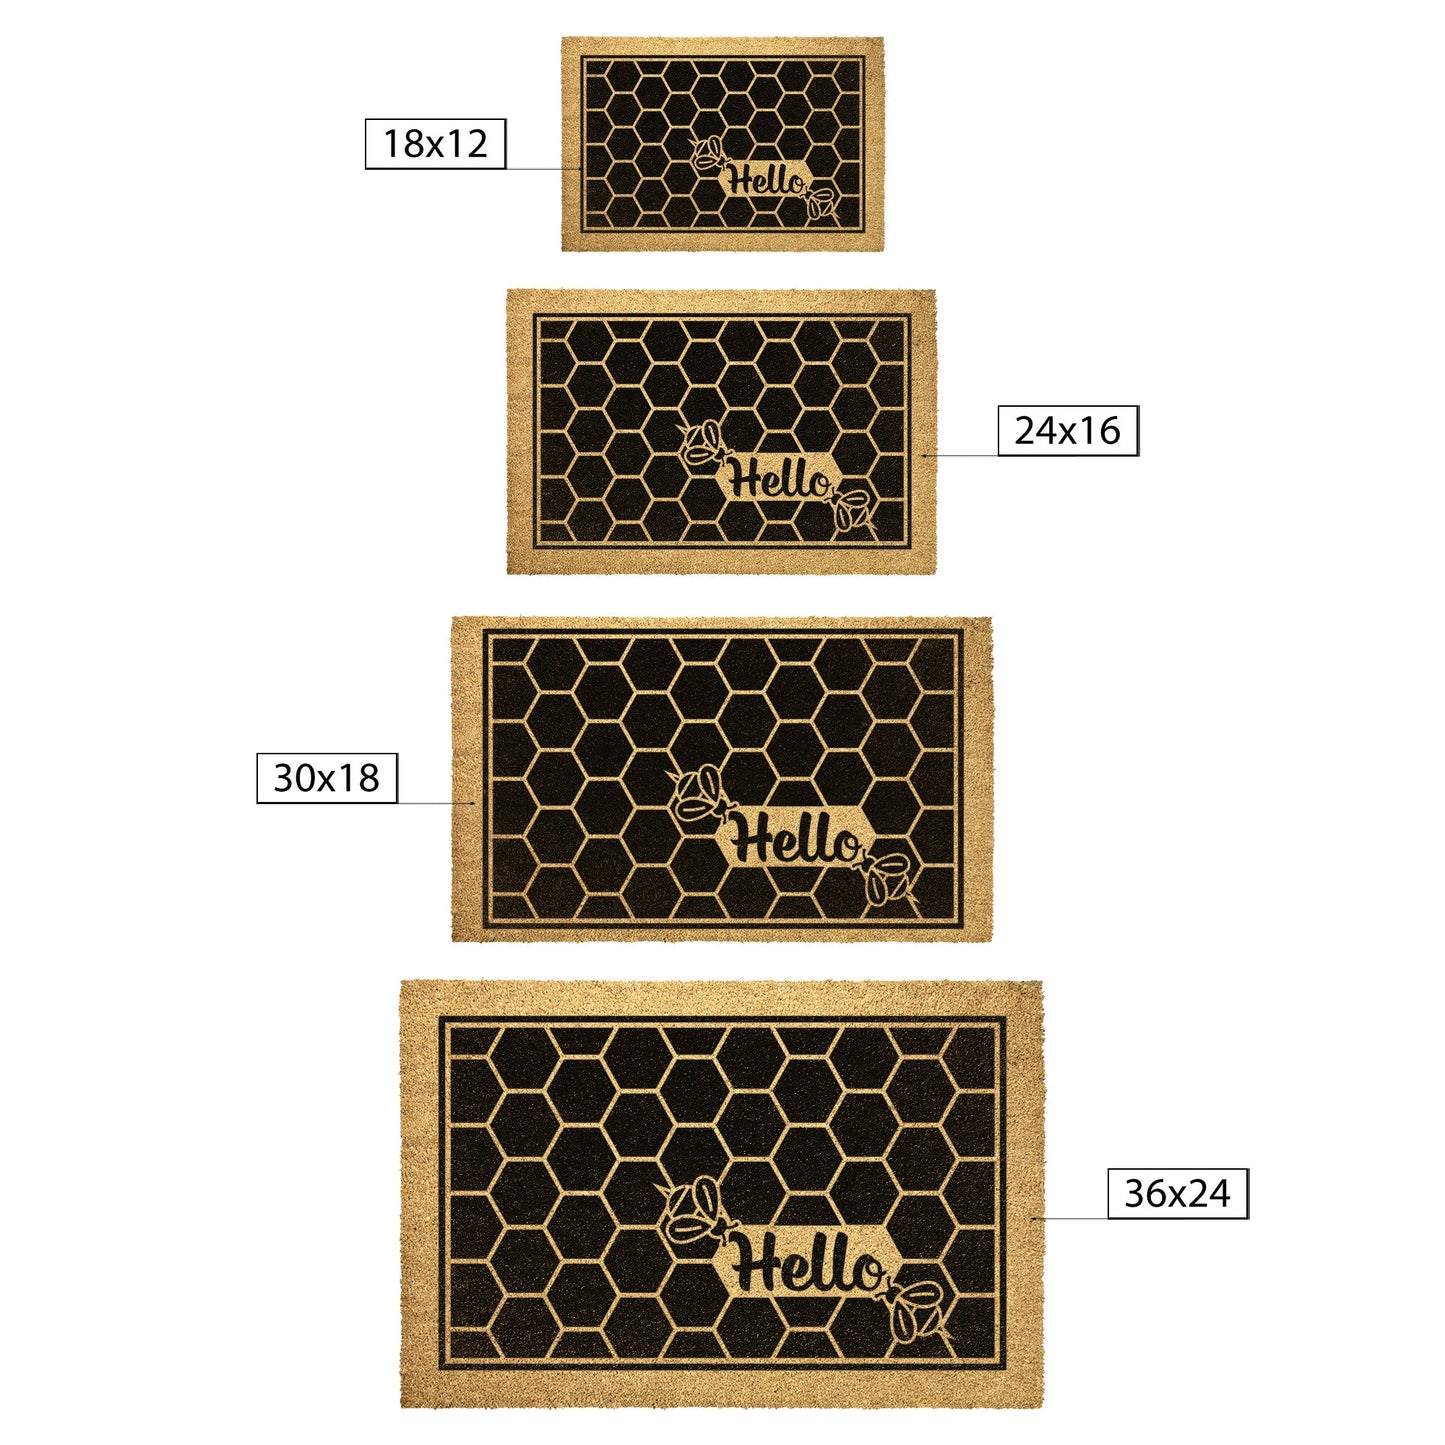 Hello Honey Bee Coir Doormat Home Goods teelaunch 36x24 